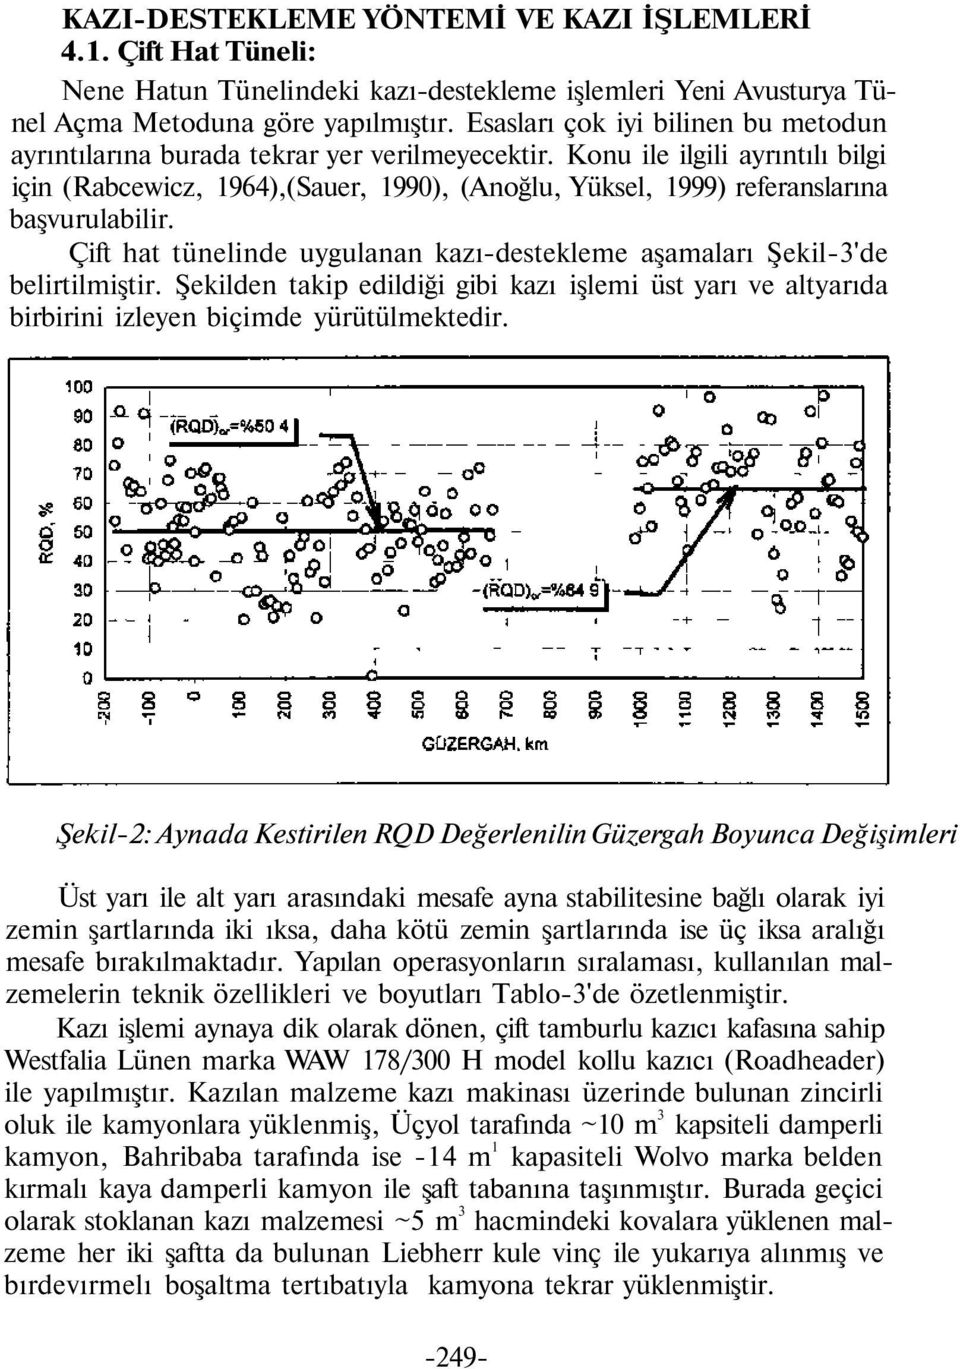 Konu ile ilgili ayrıntılı bilgi için (Rabcewicz, 1964),(Sauer, 1990), (Anoğlu, Yüksel, 1999) referanslarına başvurulabilir.